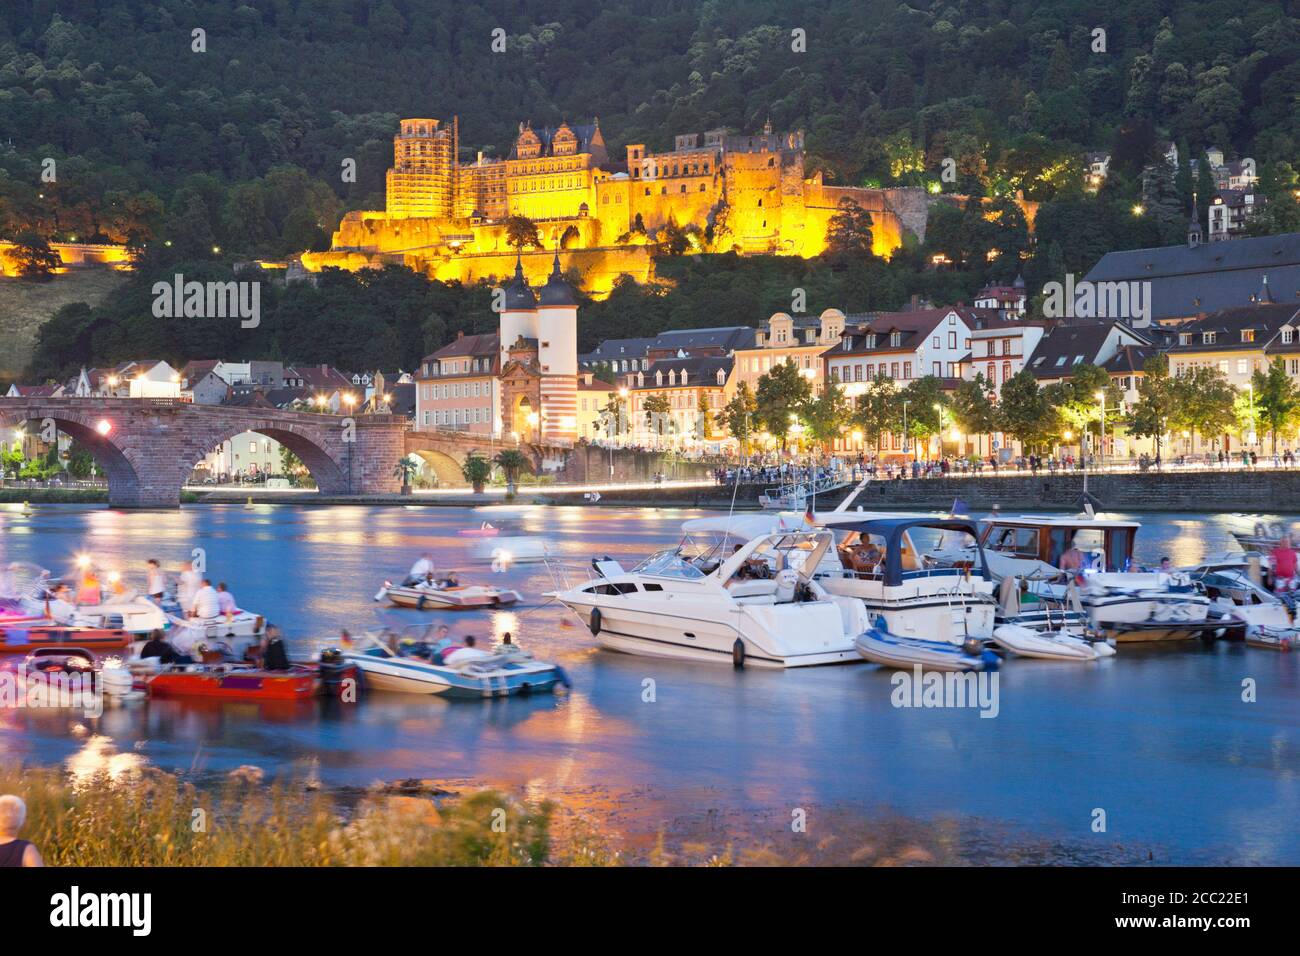 Allemagne, Heidelberg, les gens en bateau sur la rivière Neckar avec château en arrière-plan Banque D'Images